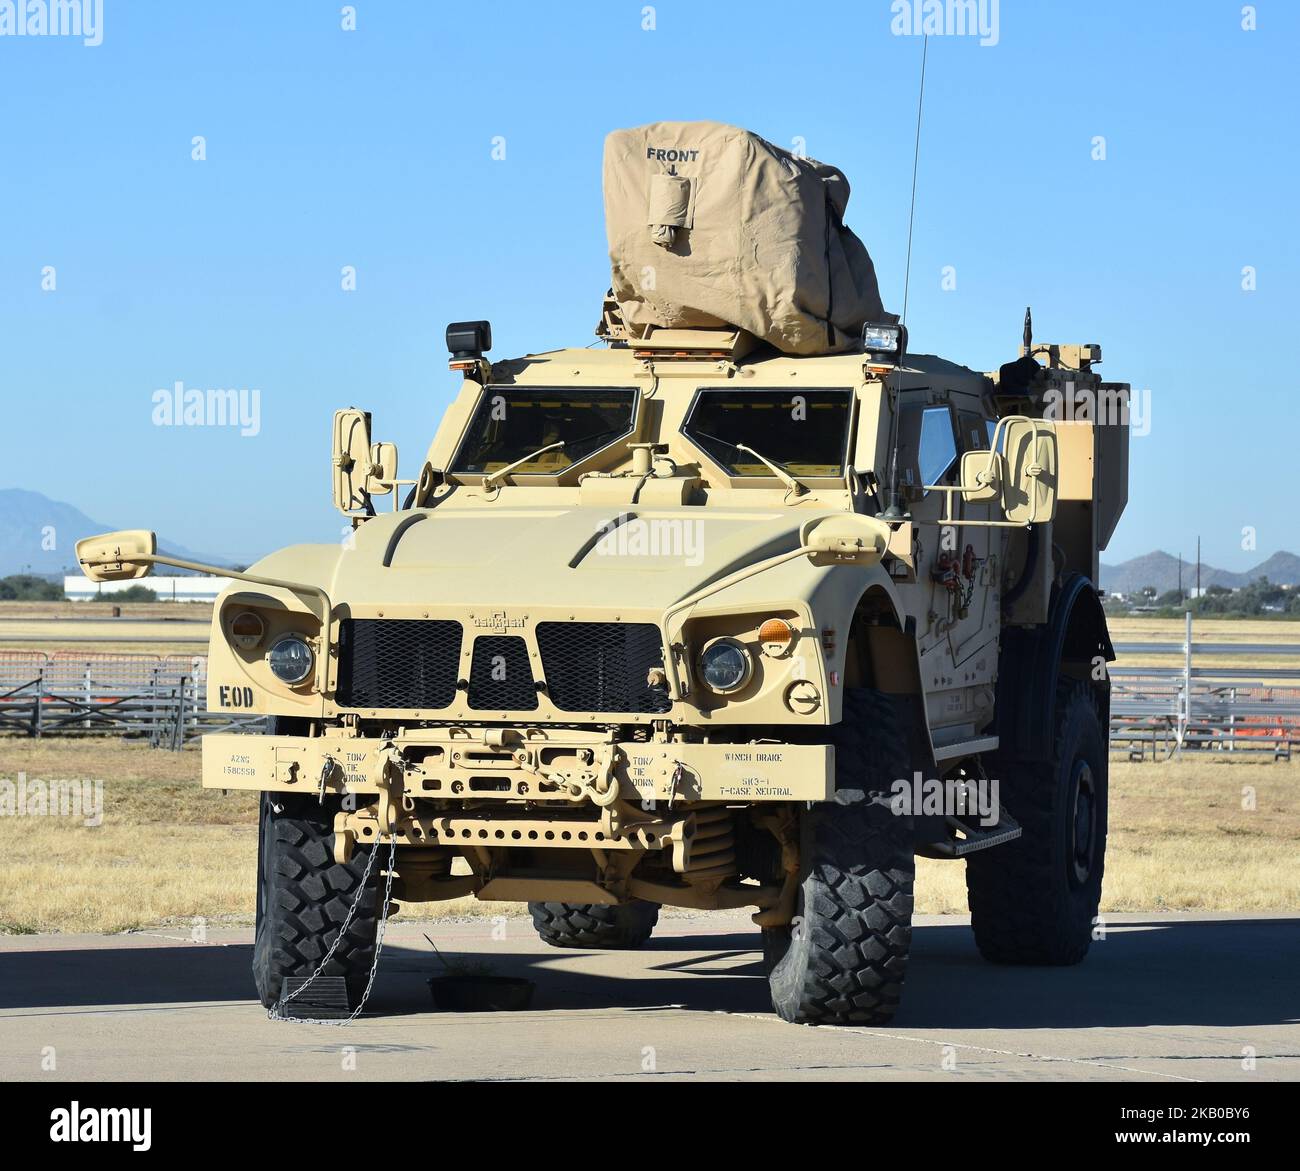 Der Oshkosh Mine-Resistant Ambush Protected (MRAP) Truck wird vom US-Militär für Truppentransporte, vor allem im Irak und in Afghanistan, eingesetzt. Stockfoto